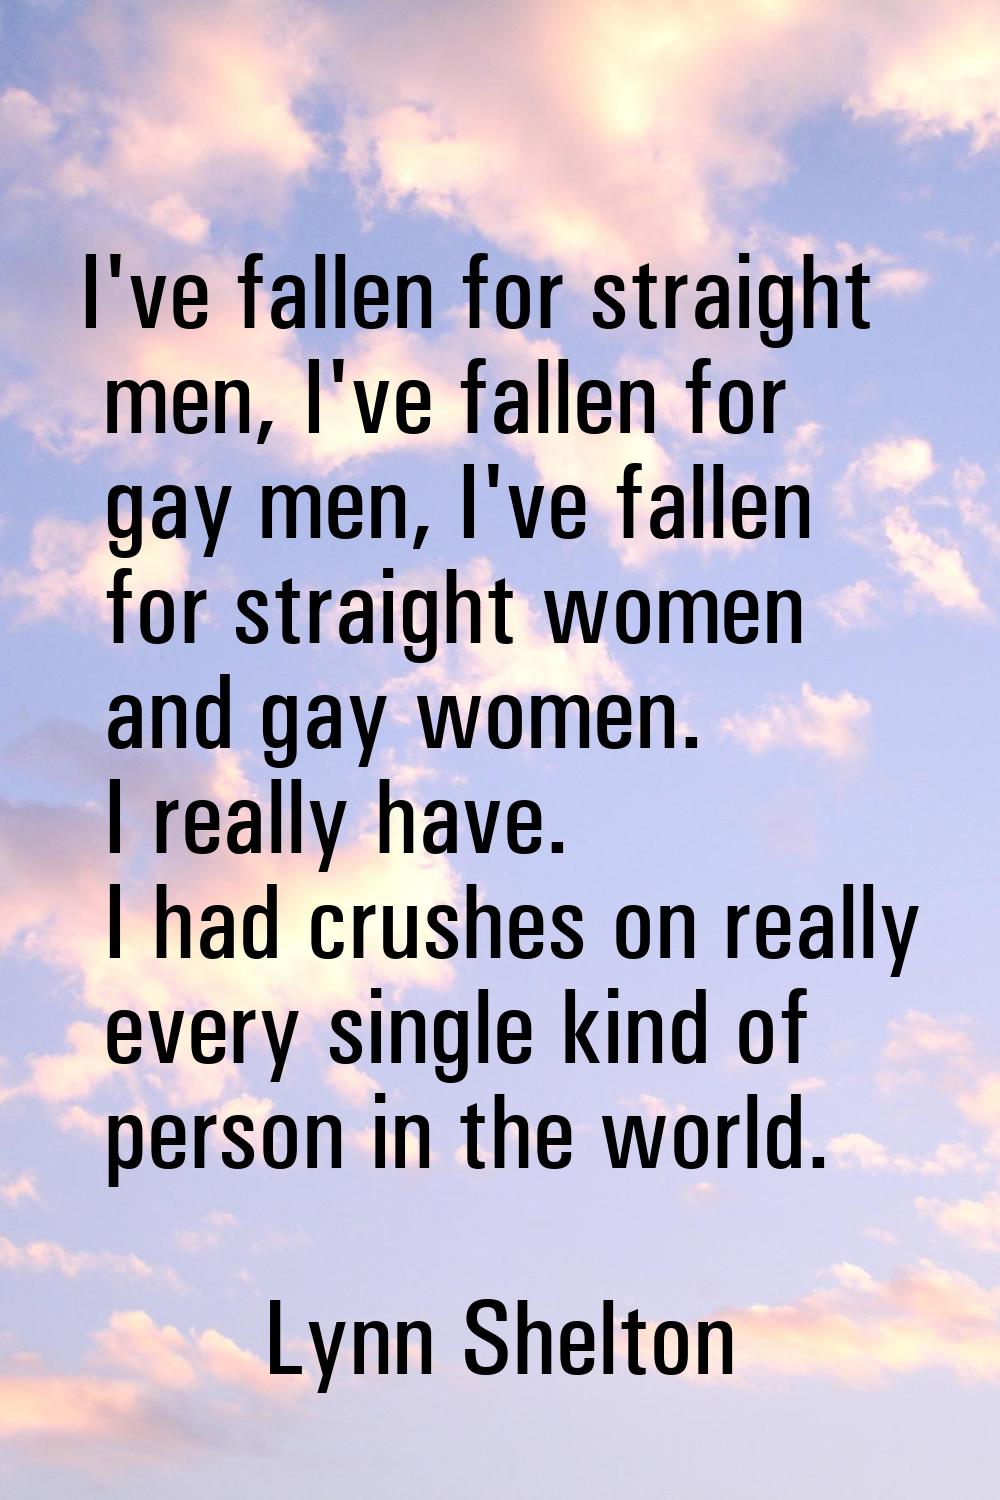 I've fallen for straight men, I've fallen for gay men, I've fallen for straight women and gay women